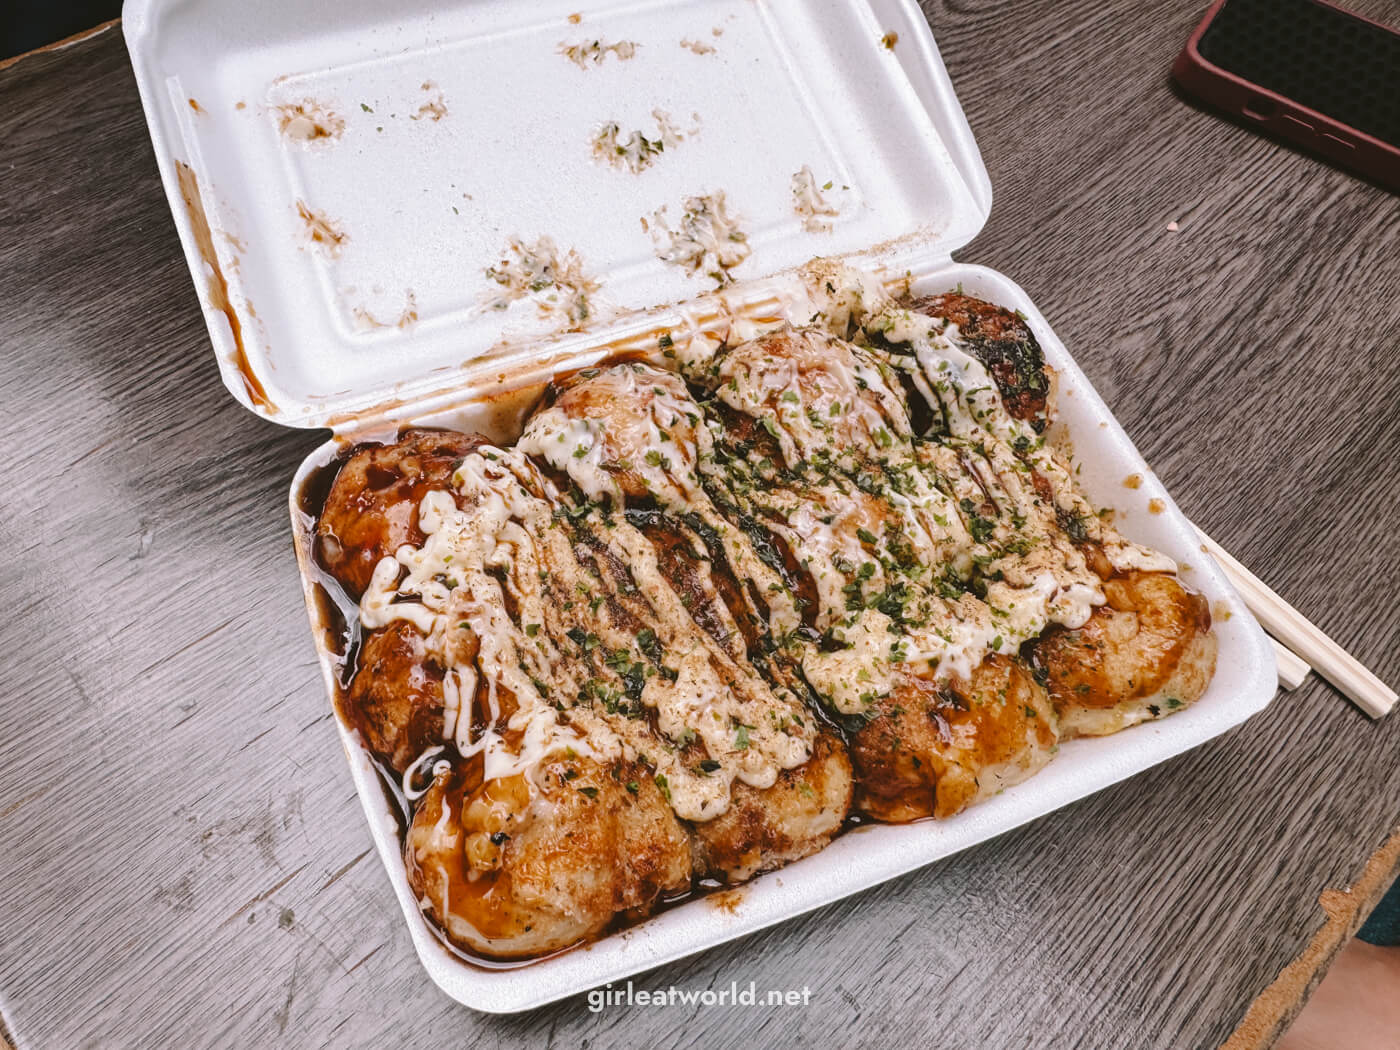 Messy delicious takoyaki from Takocha